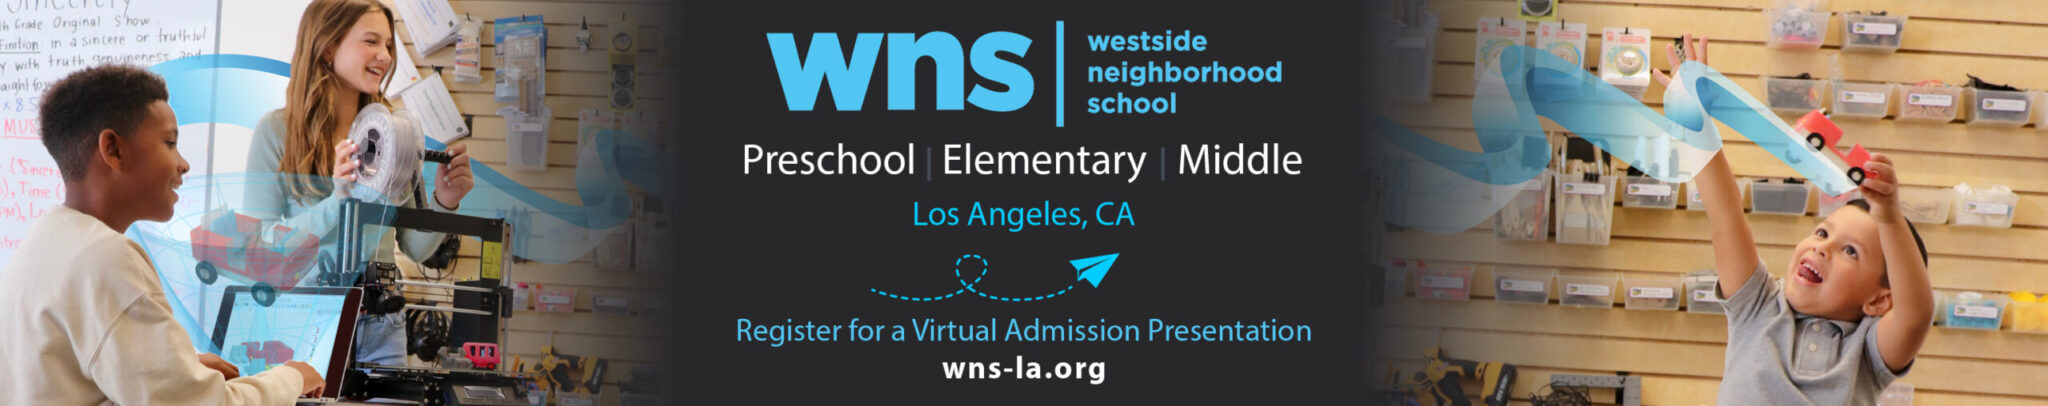 Westside Neighborhood School Banner AD